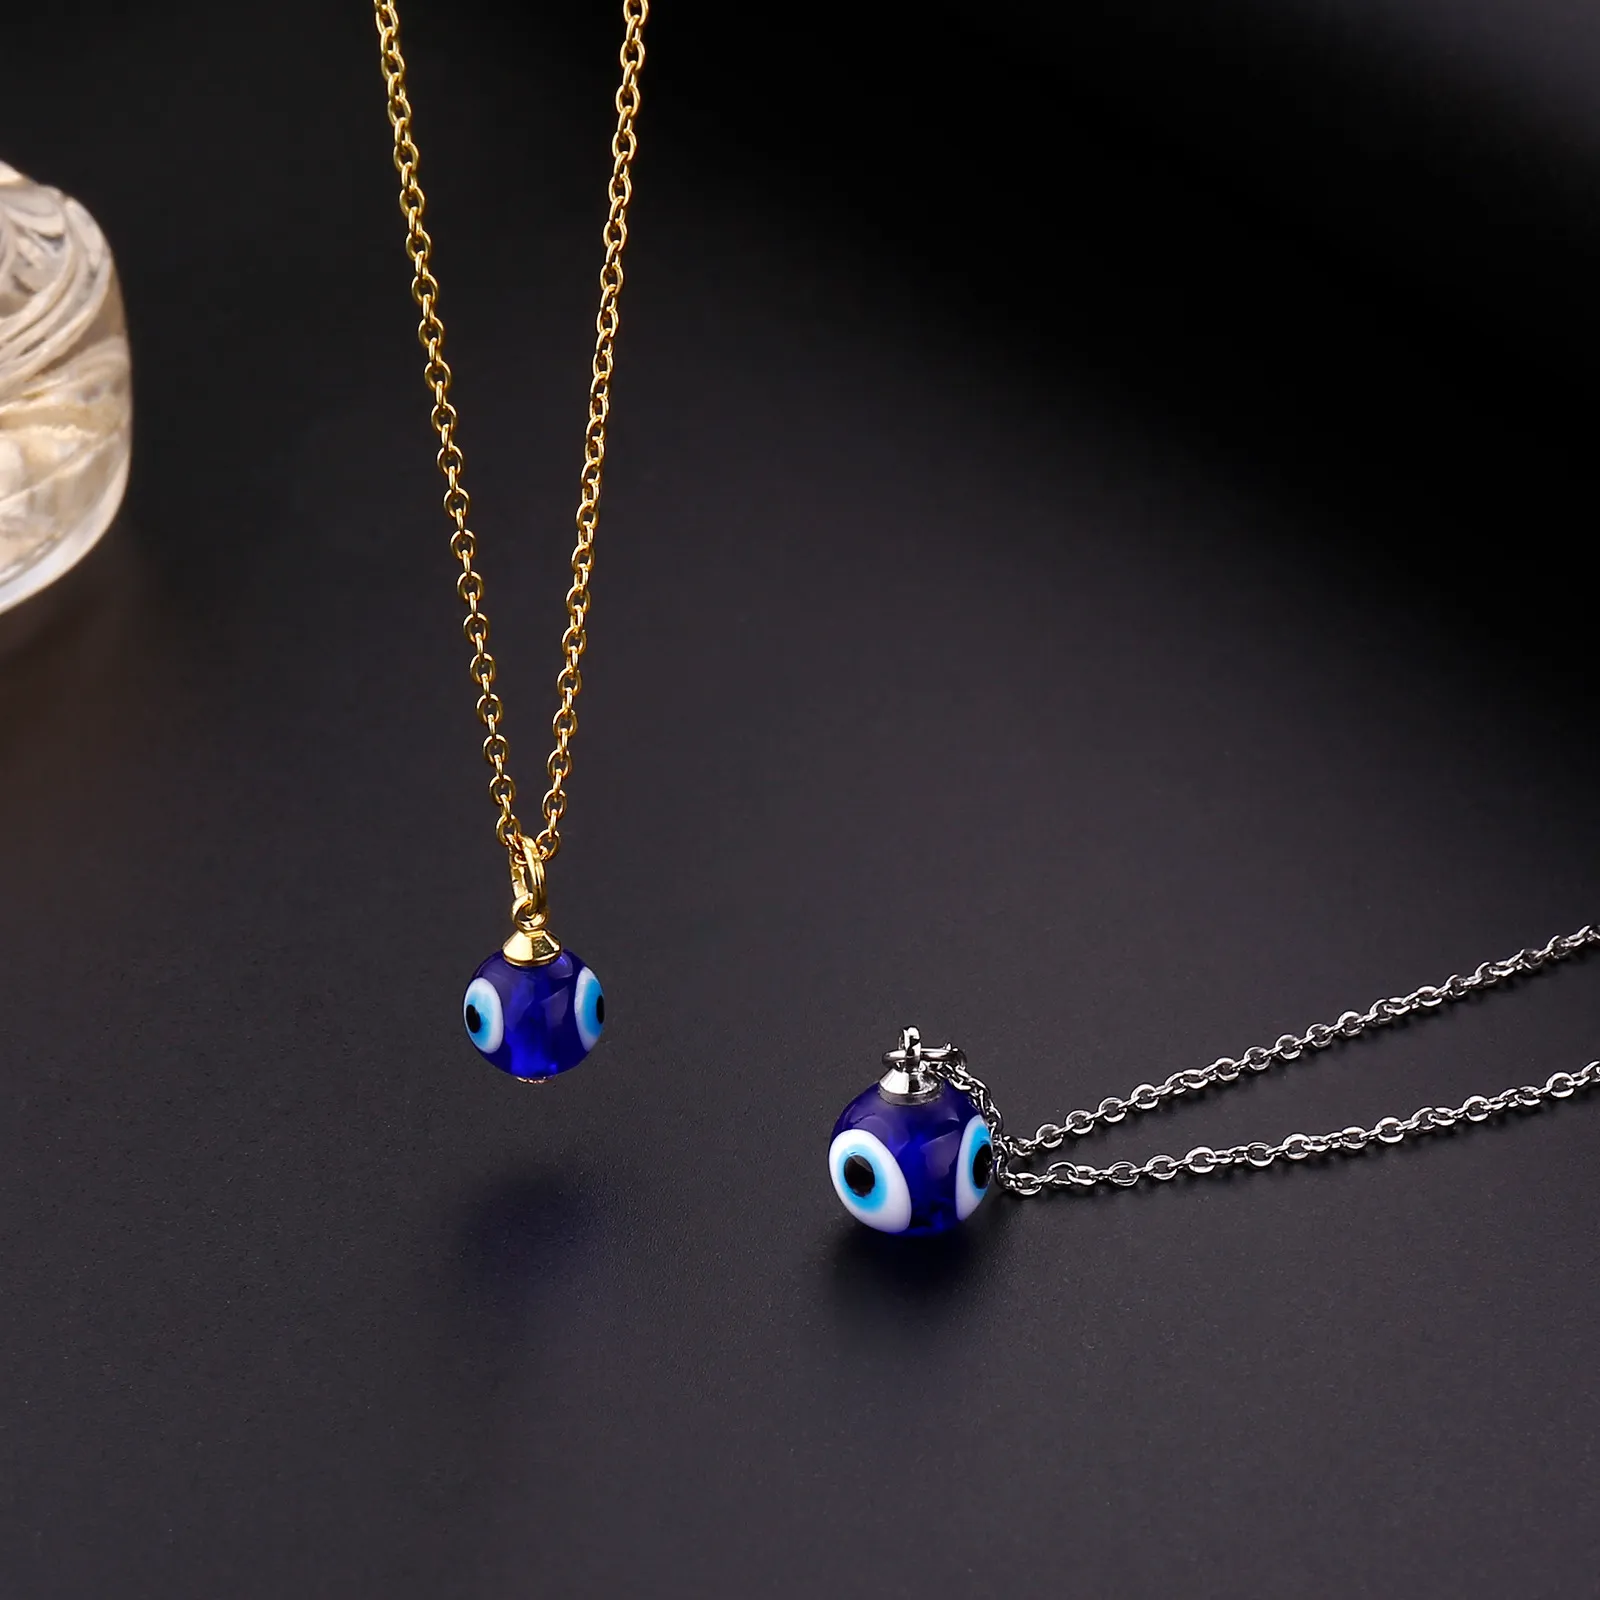 2022 neue Mode Türkische Bösen blick Blau Amulett Halskette Anhänger Frauen Zubehör Freundschaft Schmuck Glück Geschenk